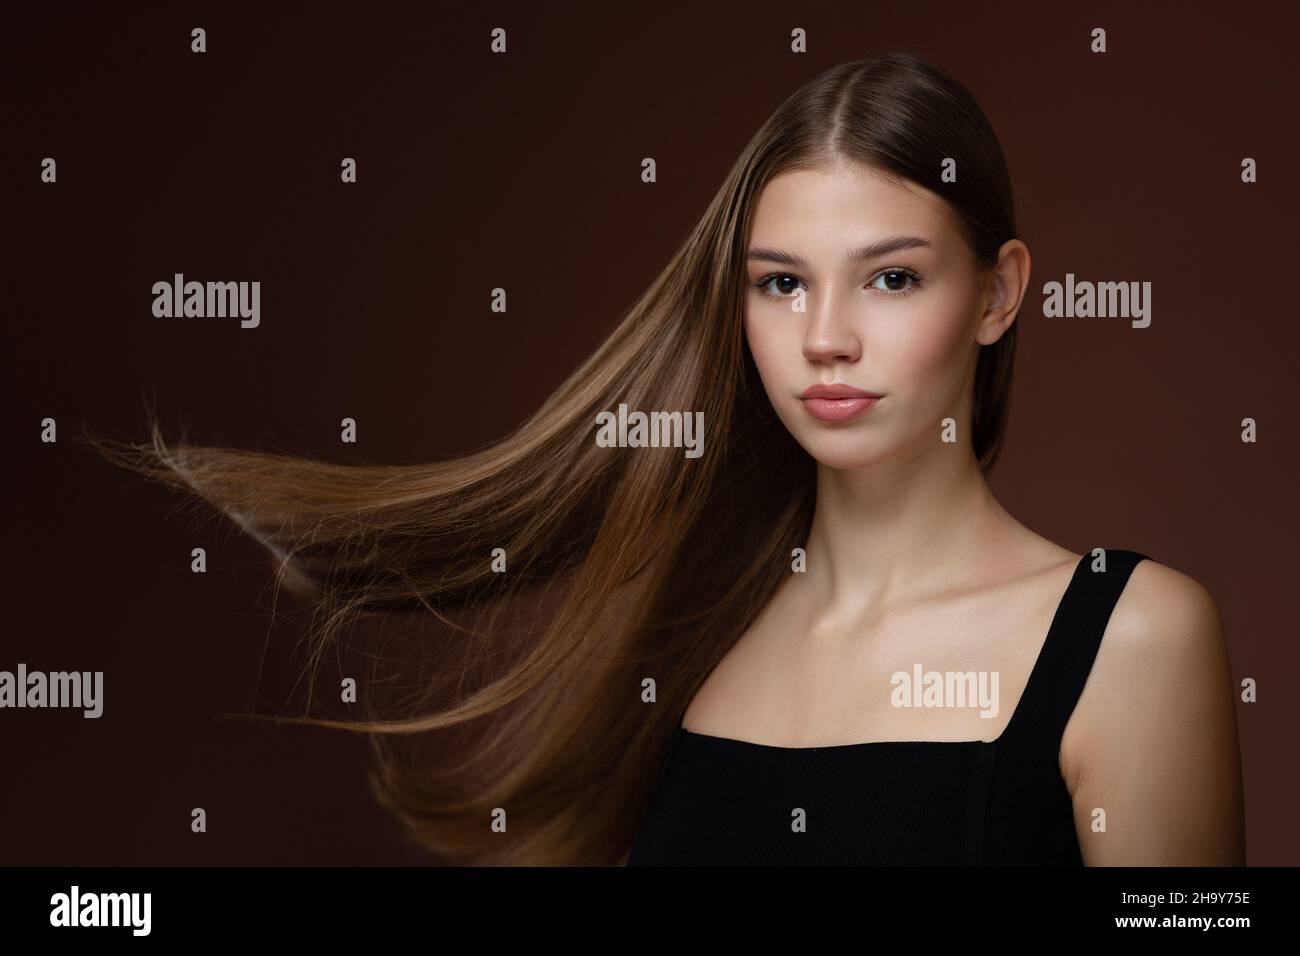 Schöne junge Frau mit langen geraden Haaren und Make-up. Brauner Hintergrund Stockfoto